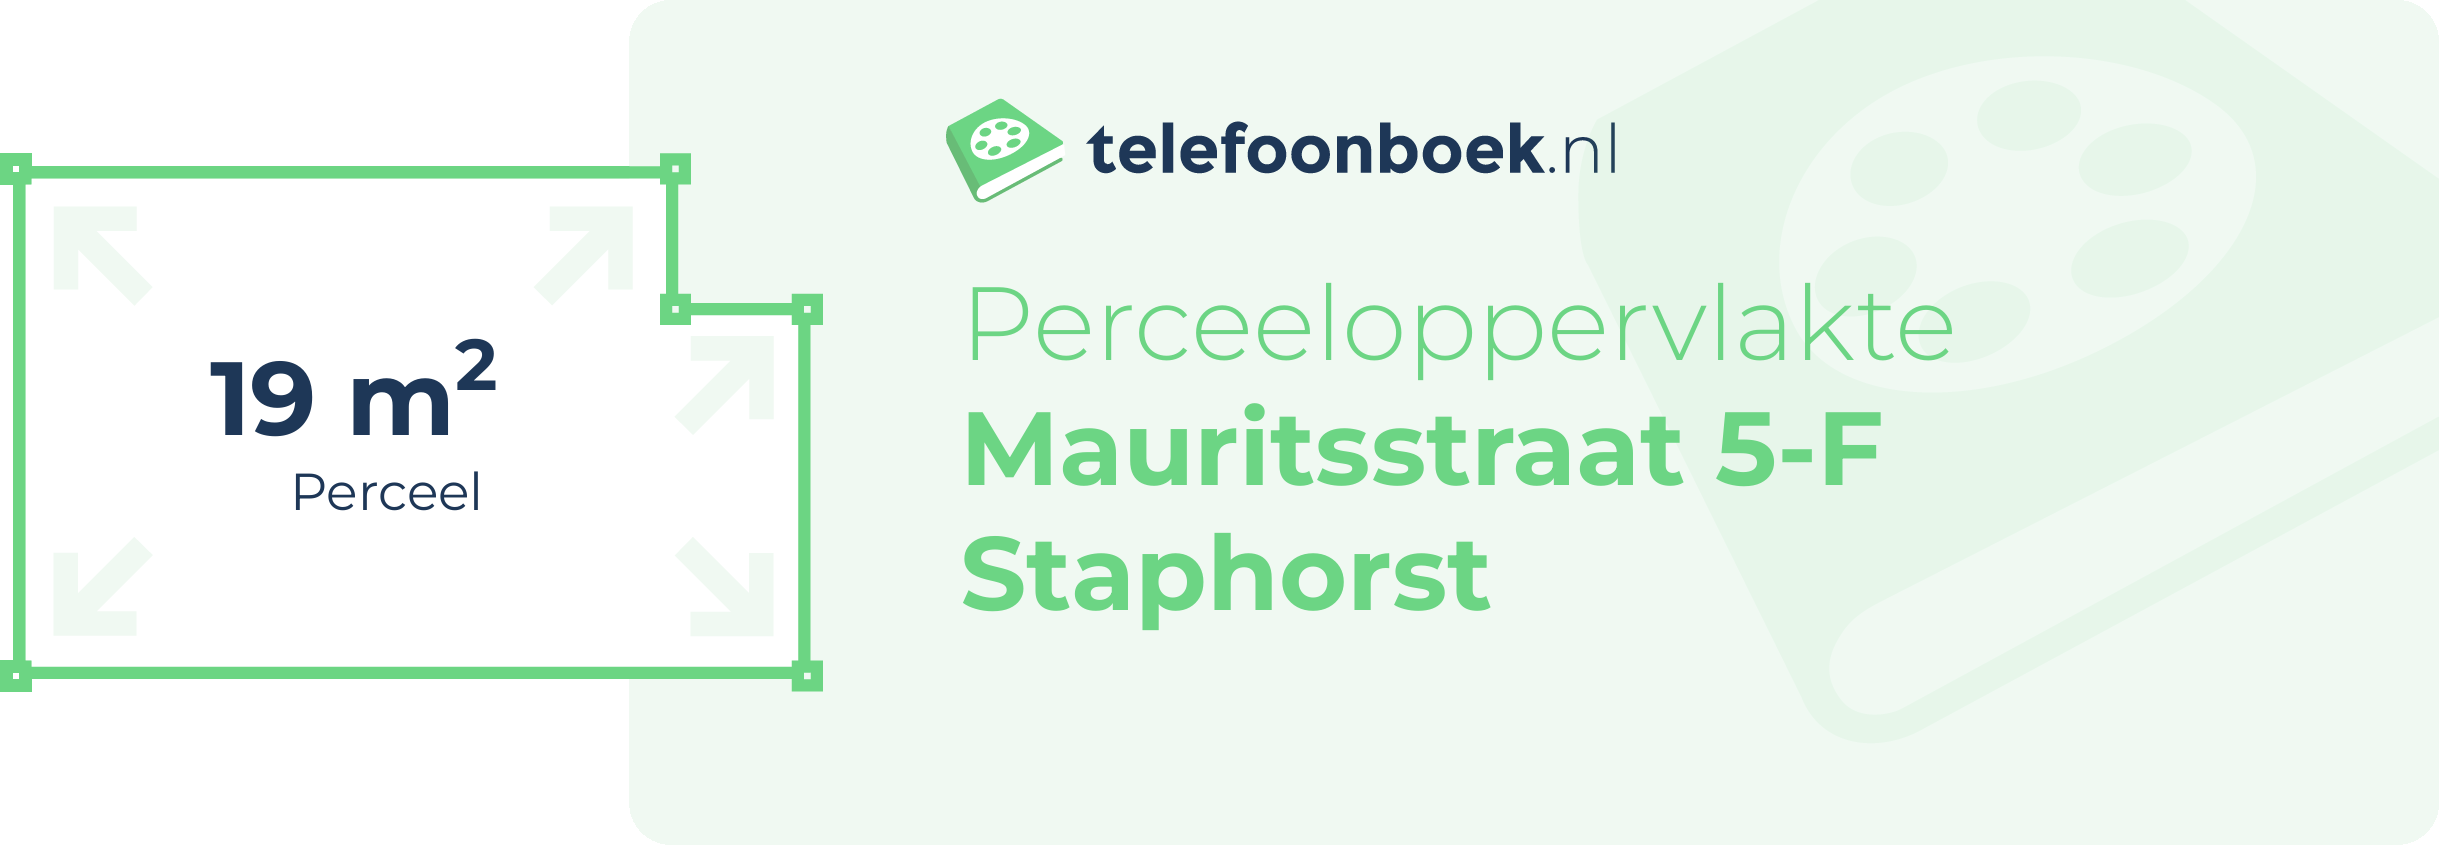 Perceeloppervlakte Mauritsstraat 5-F Staphorst